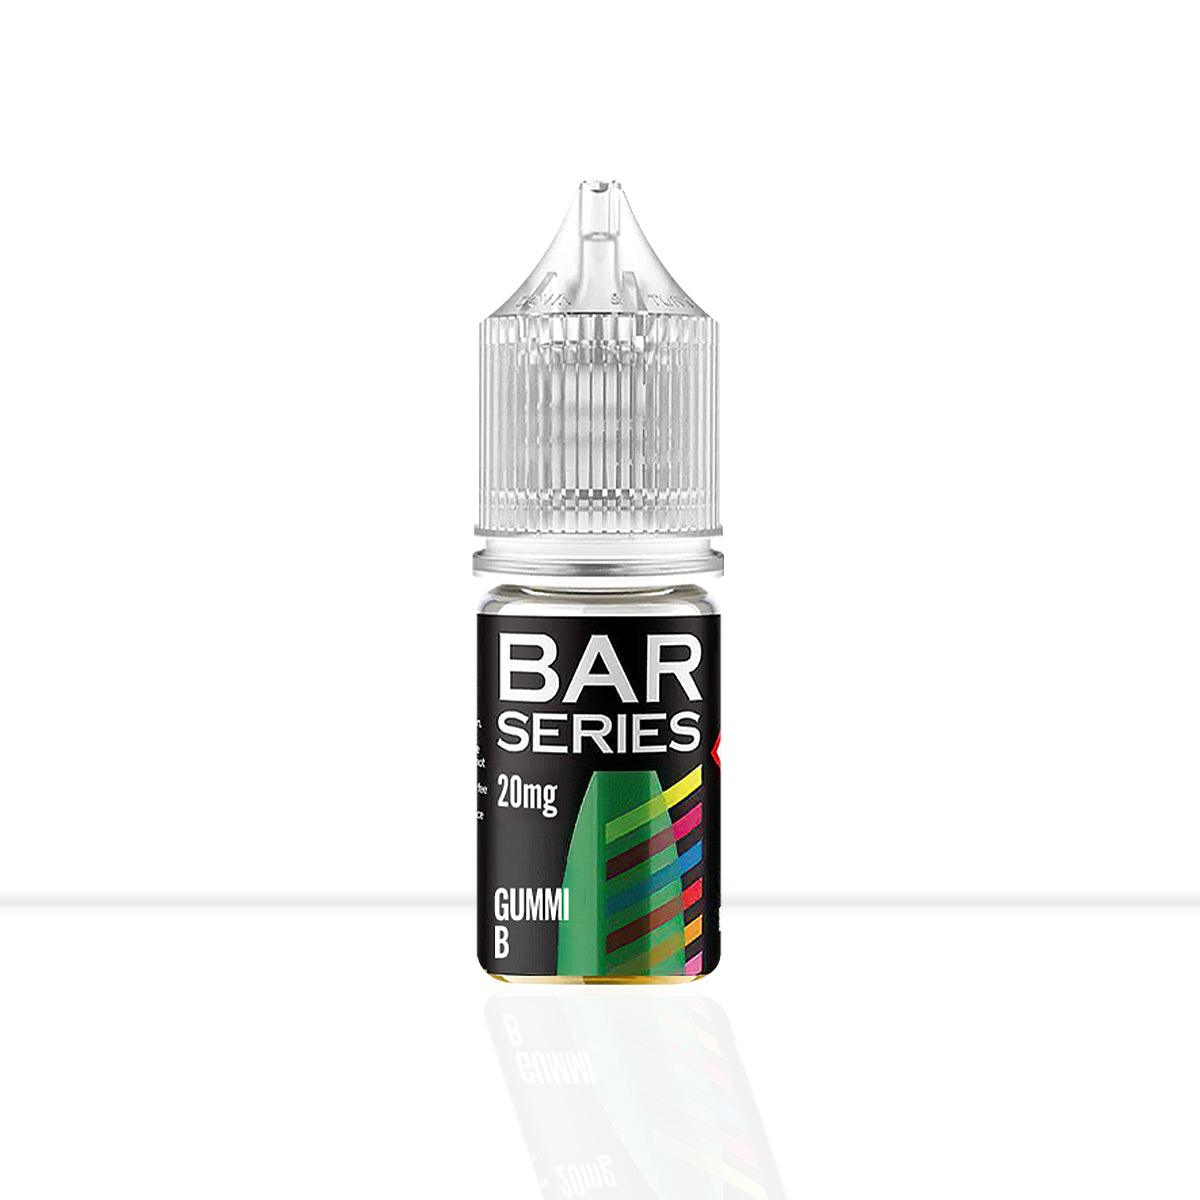 Gummy B Nic Salt E-Liquid Bar Series - Gummy B Nic Salt E-Liquid Bar Series - E Liquid